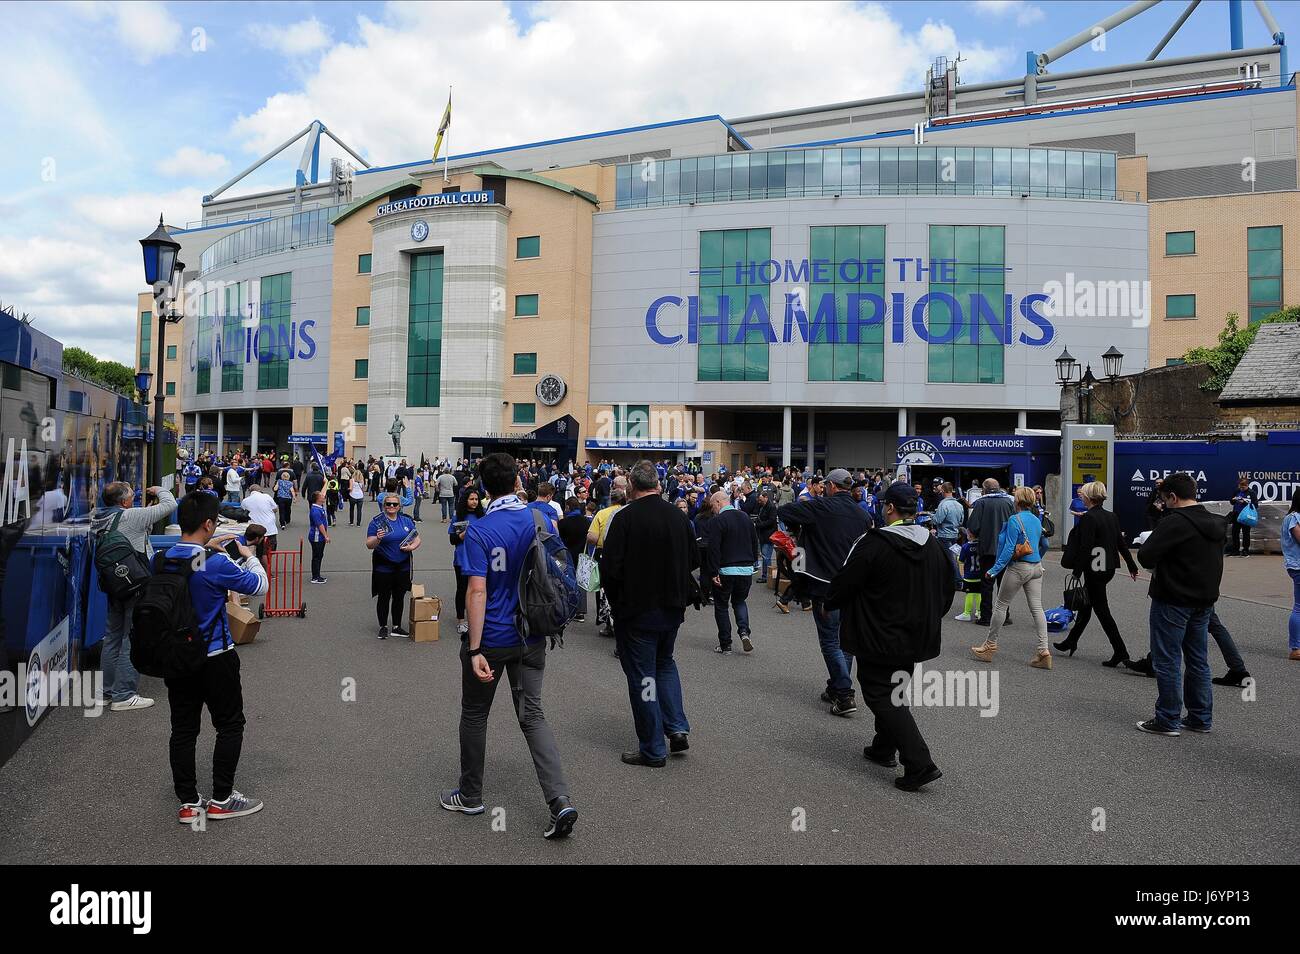 Une vue générale de l'IRB STAMFORD CHELSEA PREMIER LEAGUE CHAMPIO stade de Stamford Bridge Londres Angleterre 21 Mai 2017 Banque D'Images